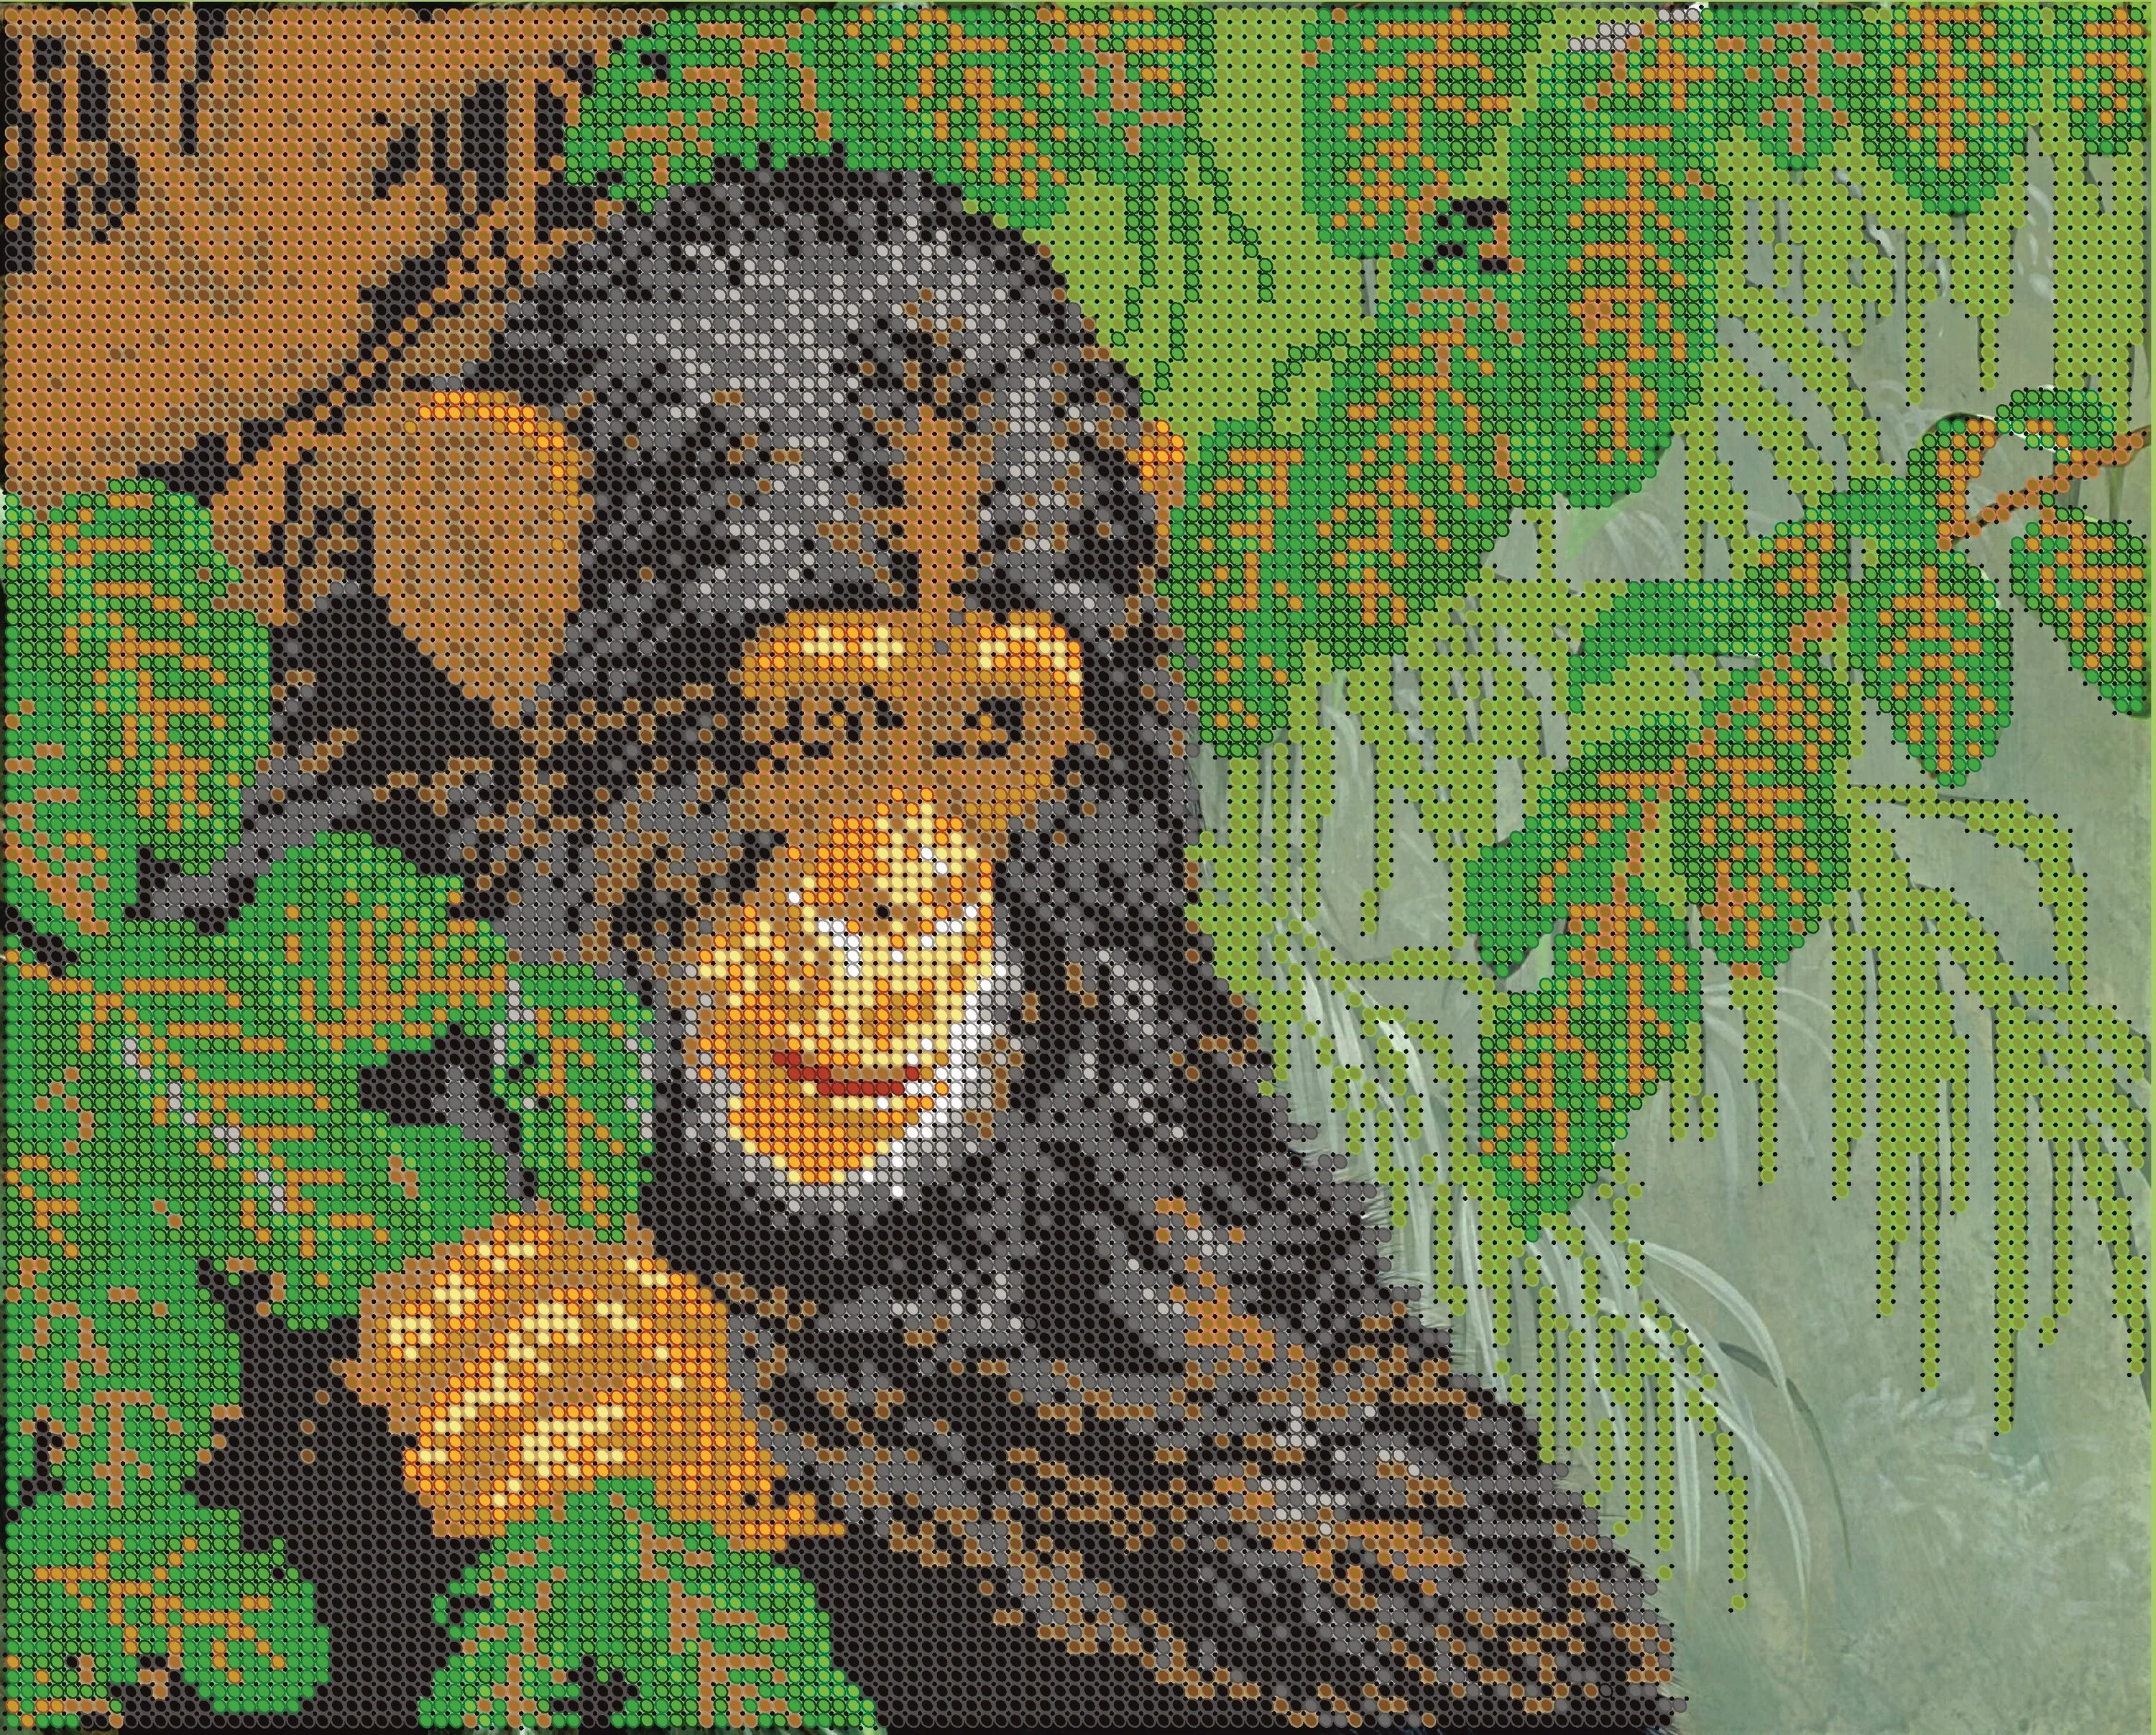 Мозаика обезьяны. Диамант набор алмазной вышивки леопард (ДК-426) 30х38 см. Вышивка бисером обезьяны. Набор для вышивания с обезьянами. Картина обезьяны.